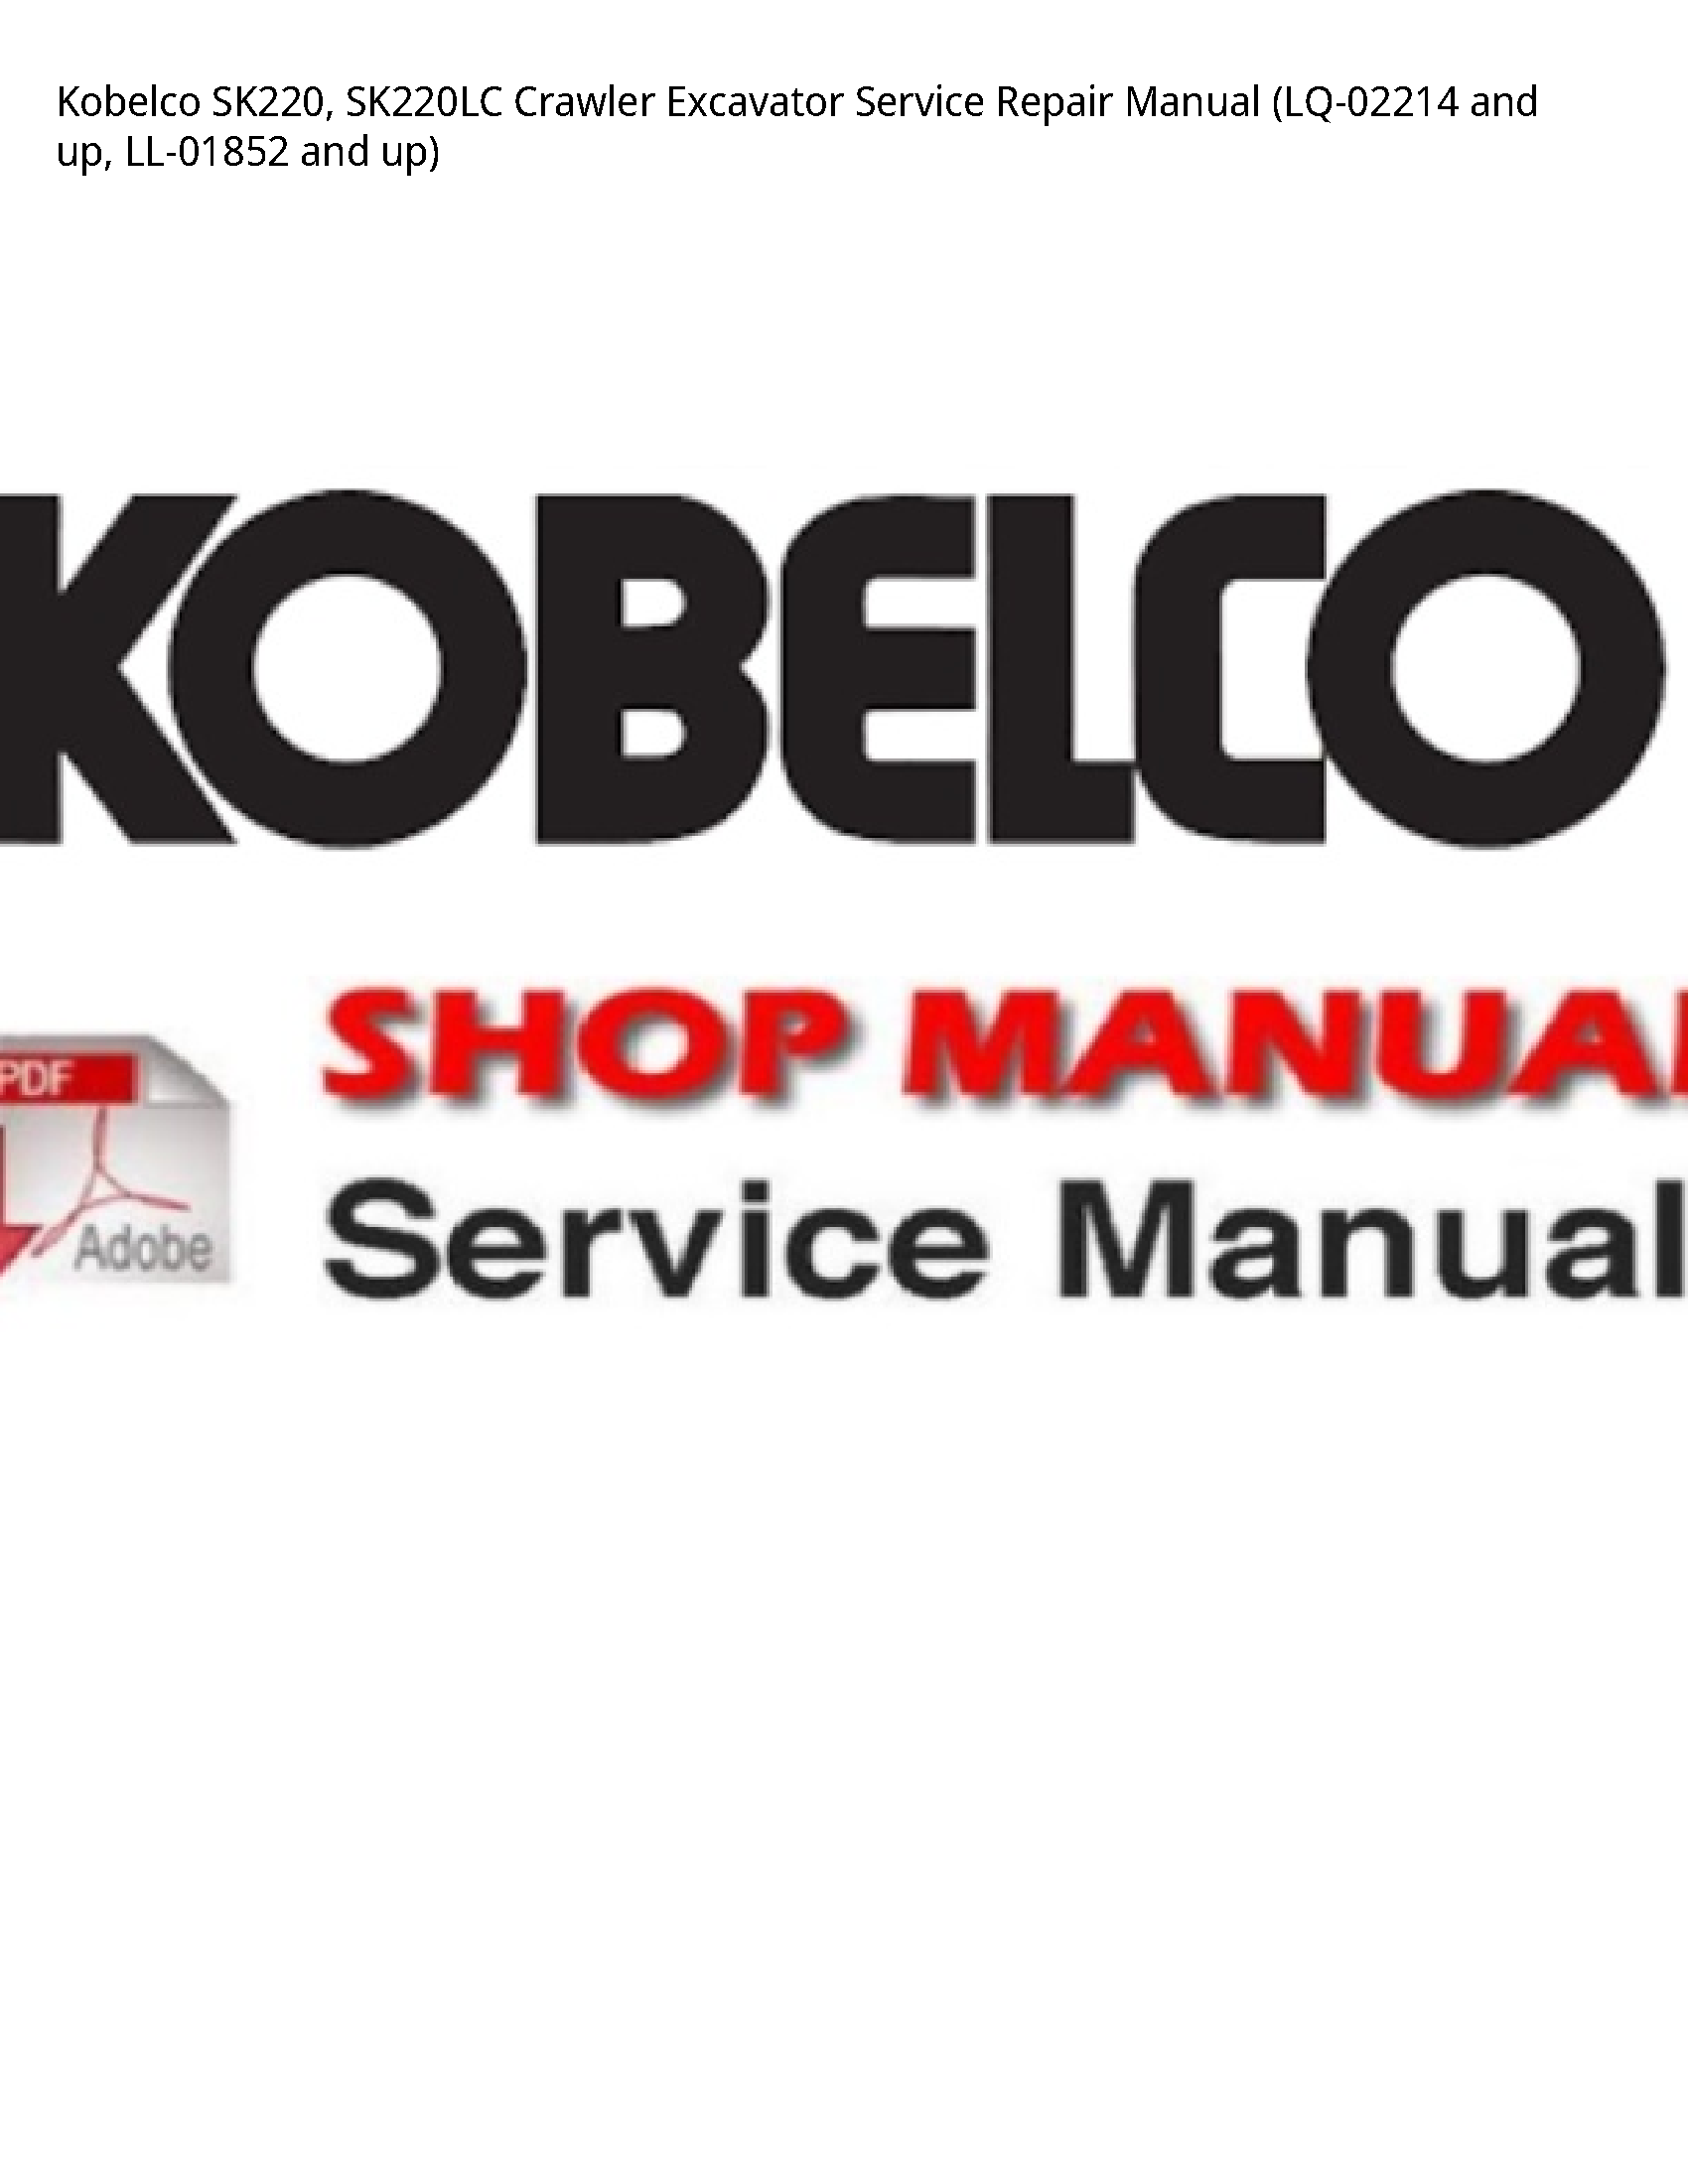 Kobelco SK220 Crawler Excavator manual